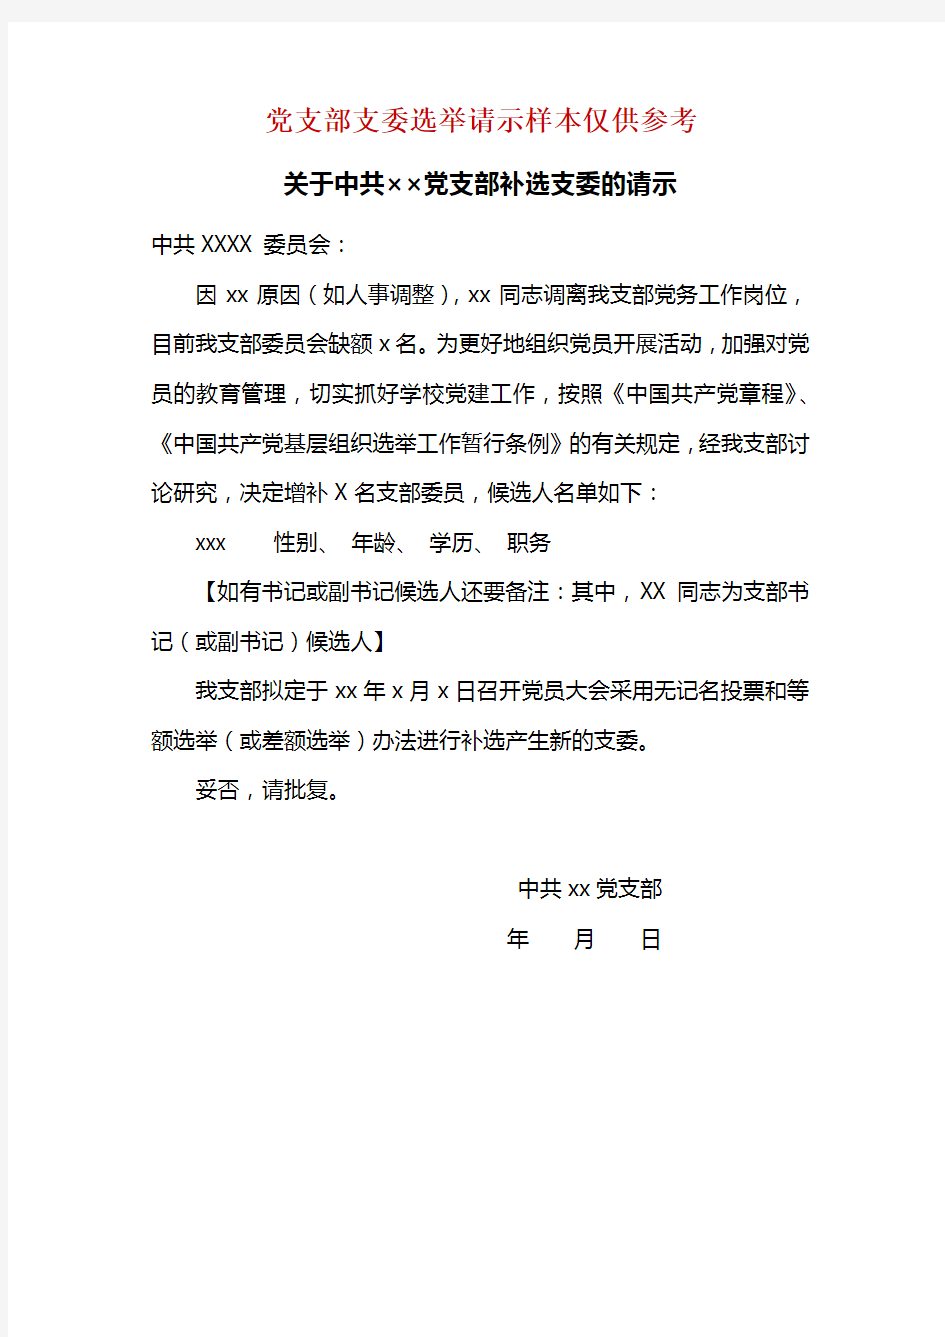 关于中共党支部补选支委的请示及选举结果报告